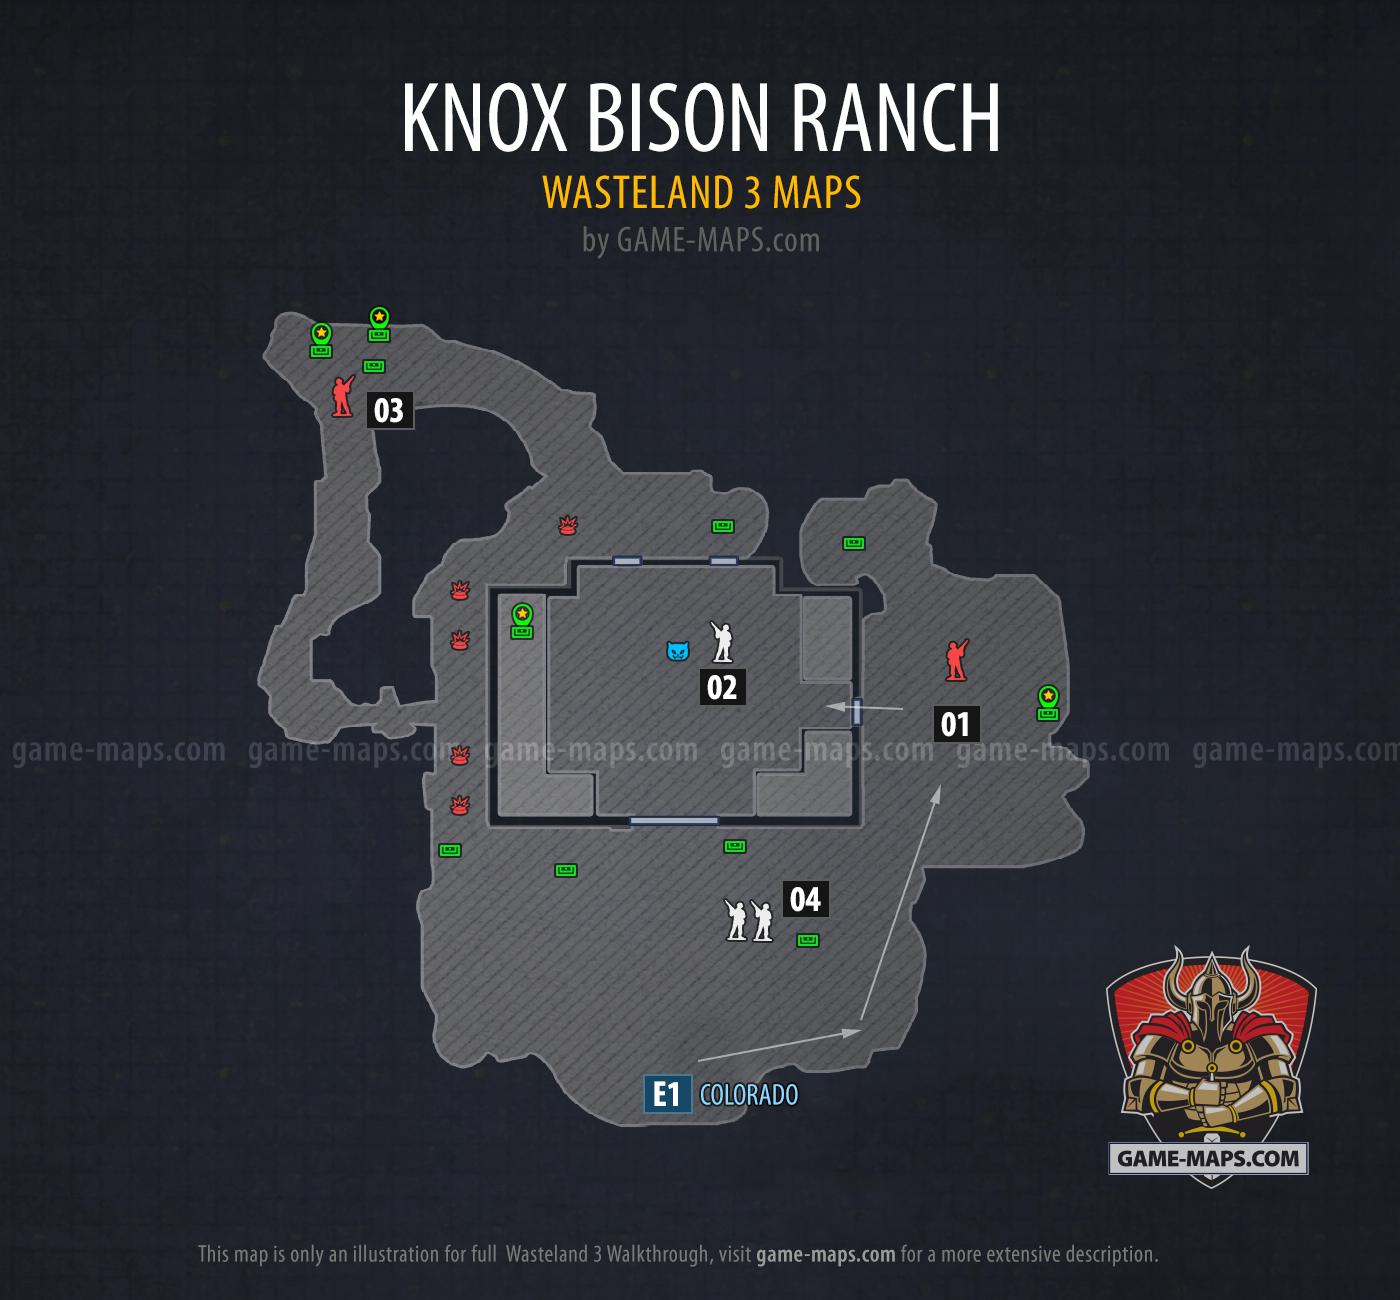 Knox Bison Ranch - Wasteland 3